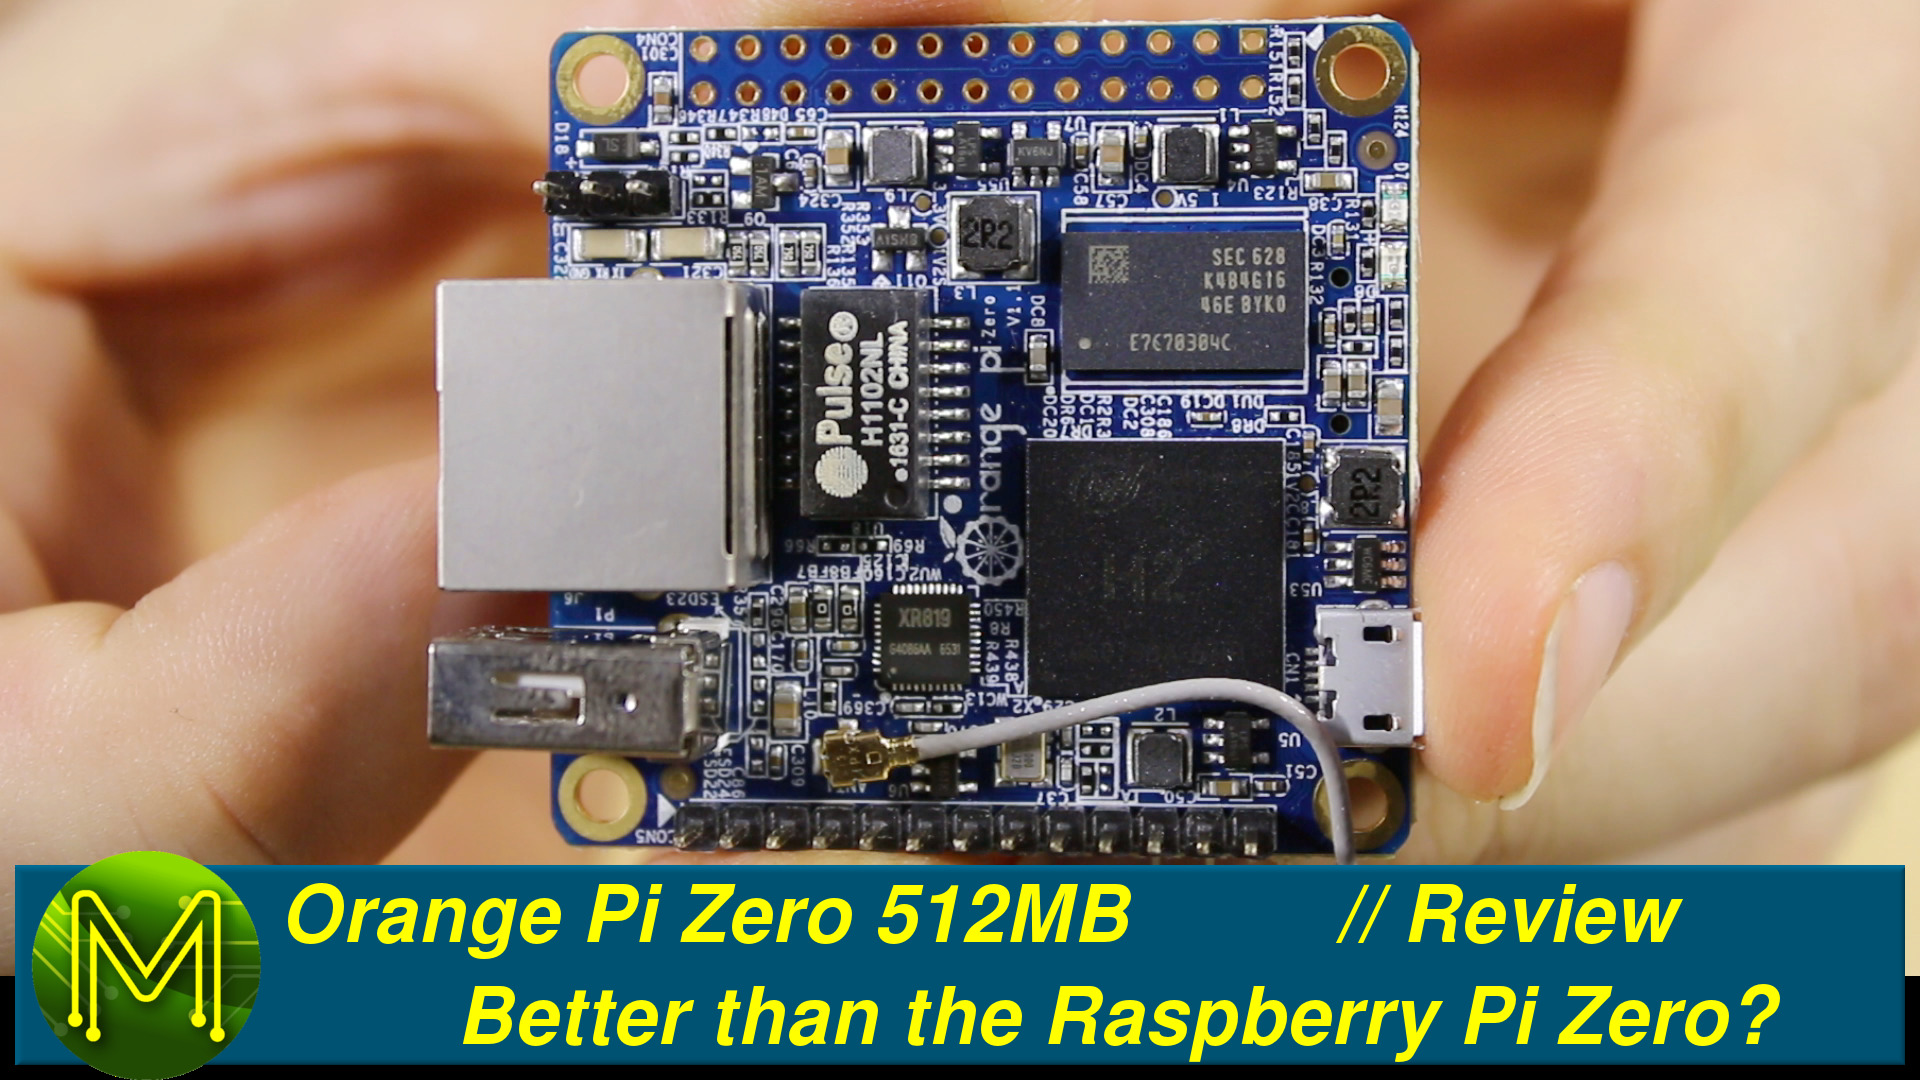 Orange Pi Zero: Better than the Raspberry Pi Zero? // Review